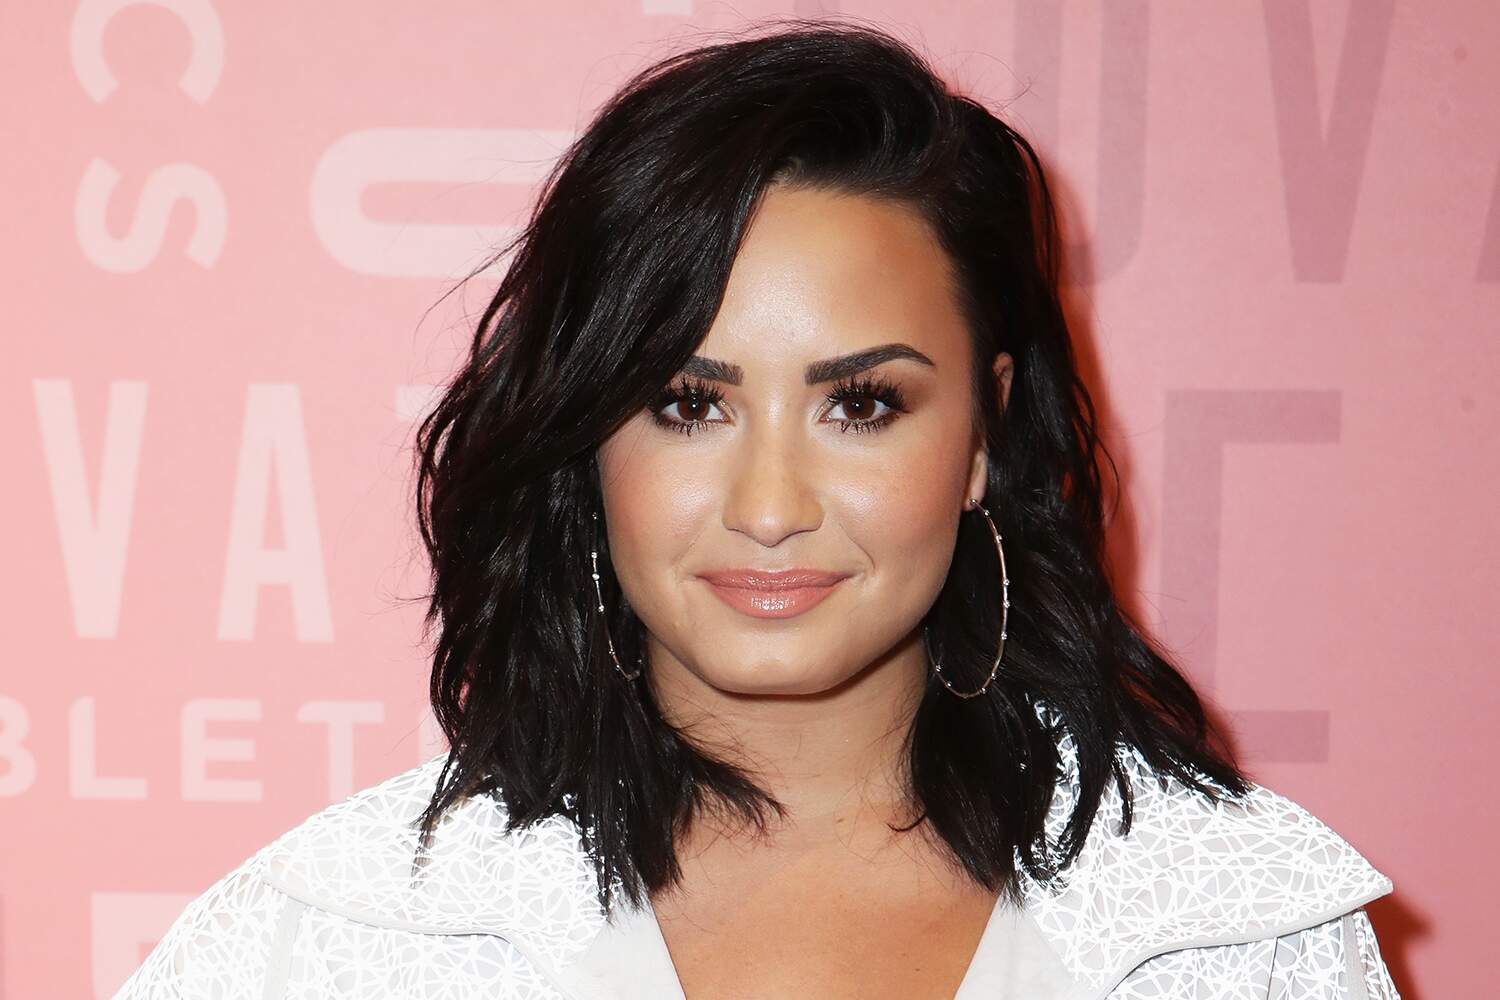 Em entrevista, Demi Lovato desabafa sobre vício em drogas no passado: ”Não sabia mais o que fazer”